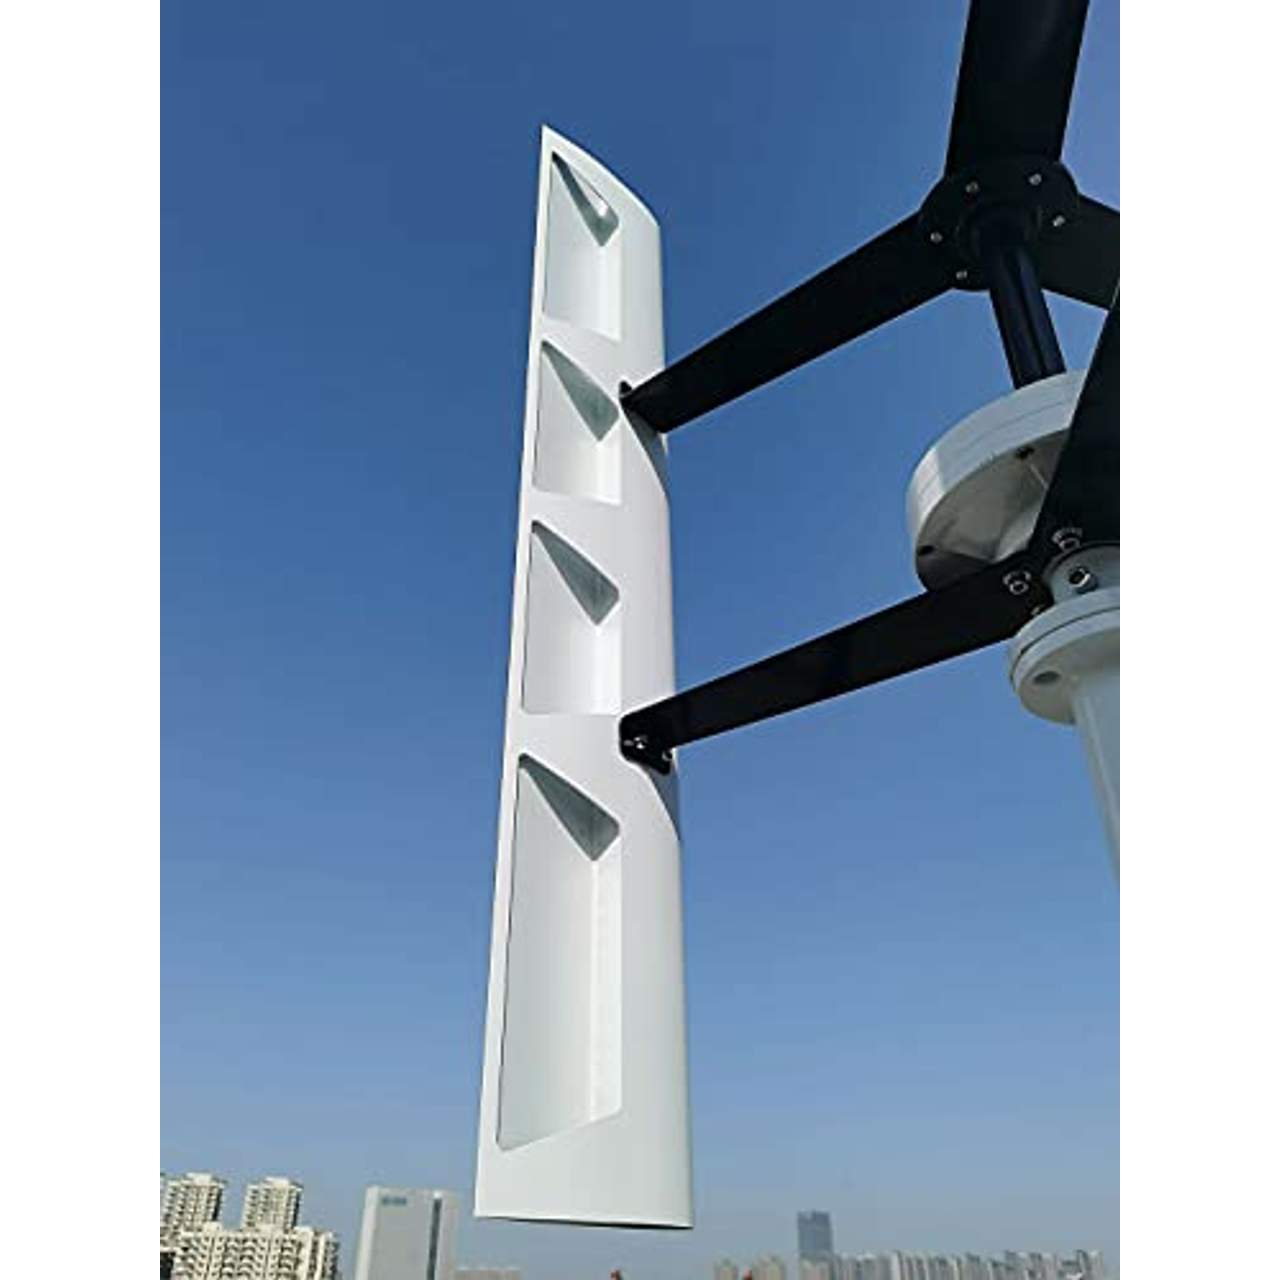 Genway Power Windkraftanlage Vertikal Vawt 800W 24V Heimgebrauch